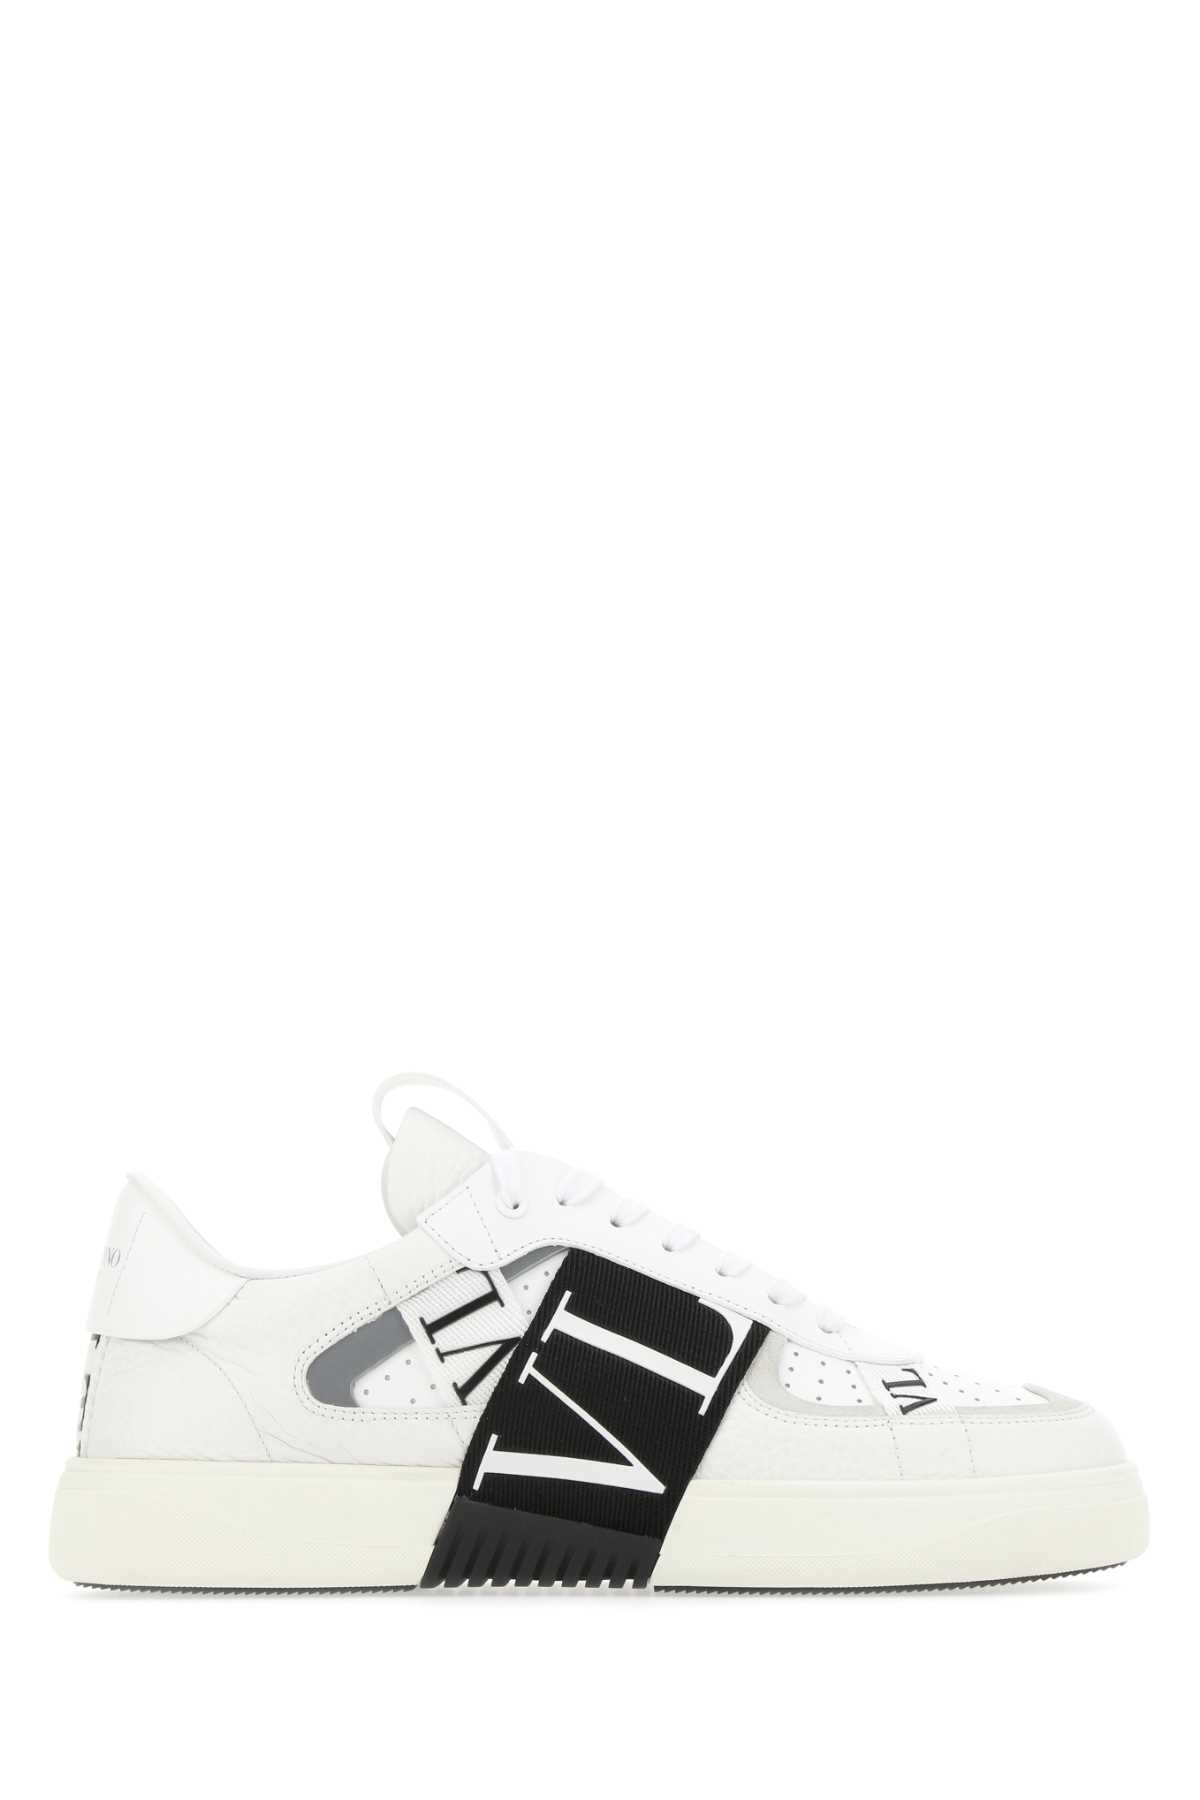 Valentino Garavani White Leather Vl7n Sneakers In 24p